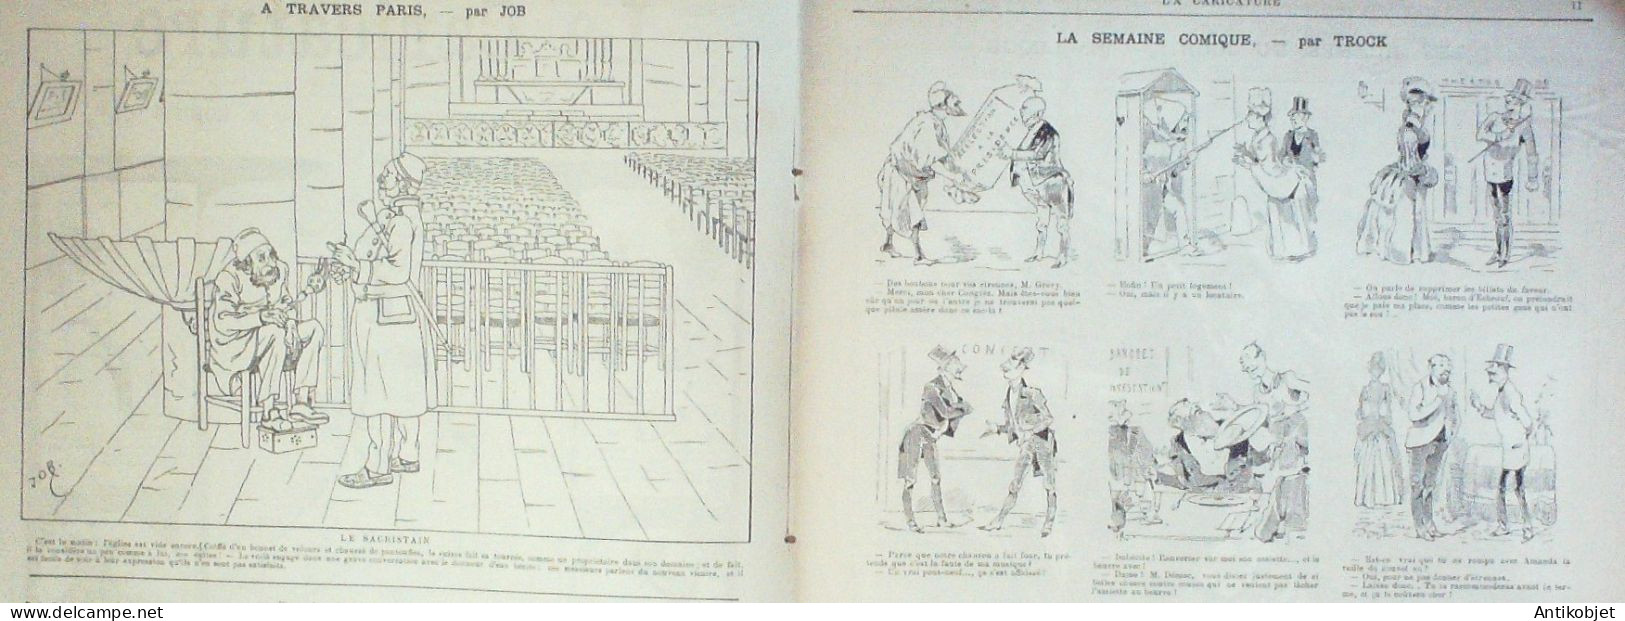 La Caricature 1886 N°315 Calendrier Universel Robida Clémenceau Par Luque Sapho Sorel Job Loys - Zeitschriften - Vor 1900